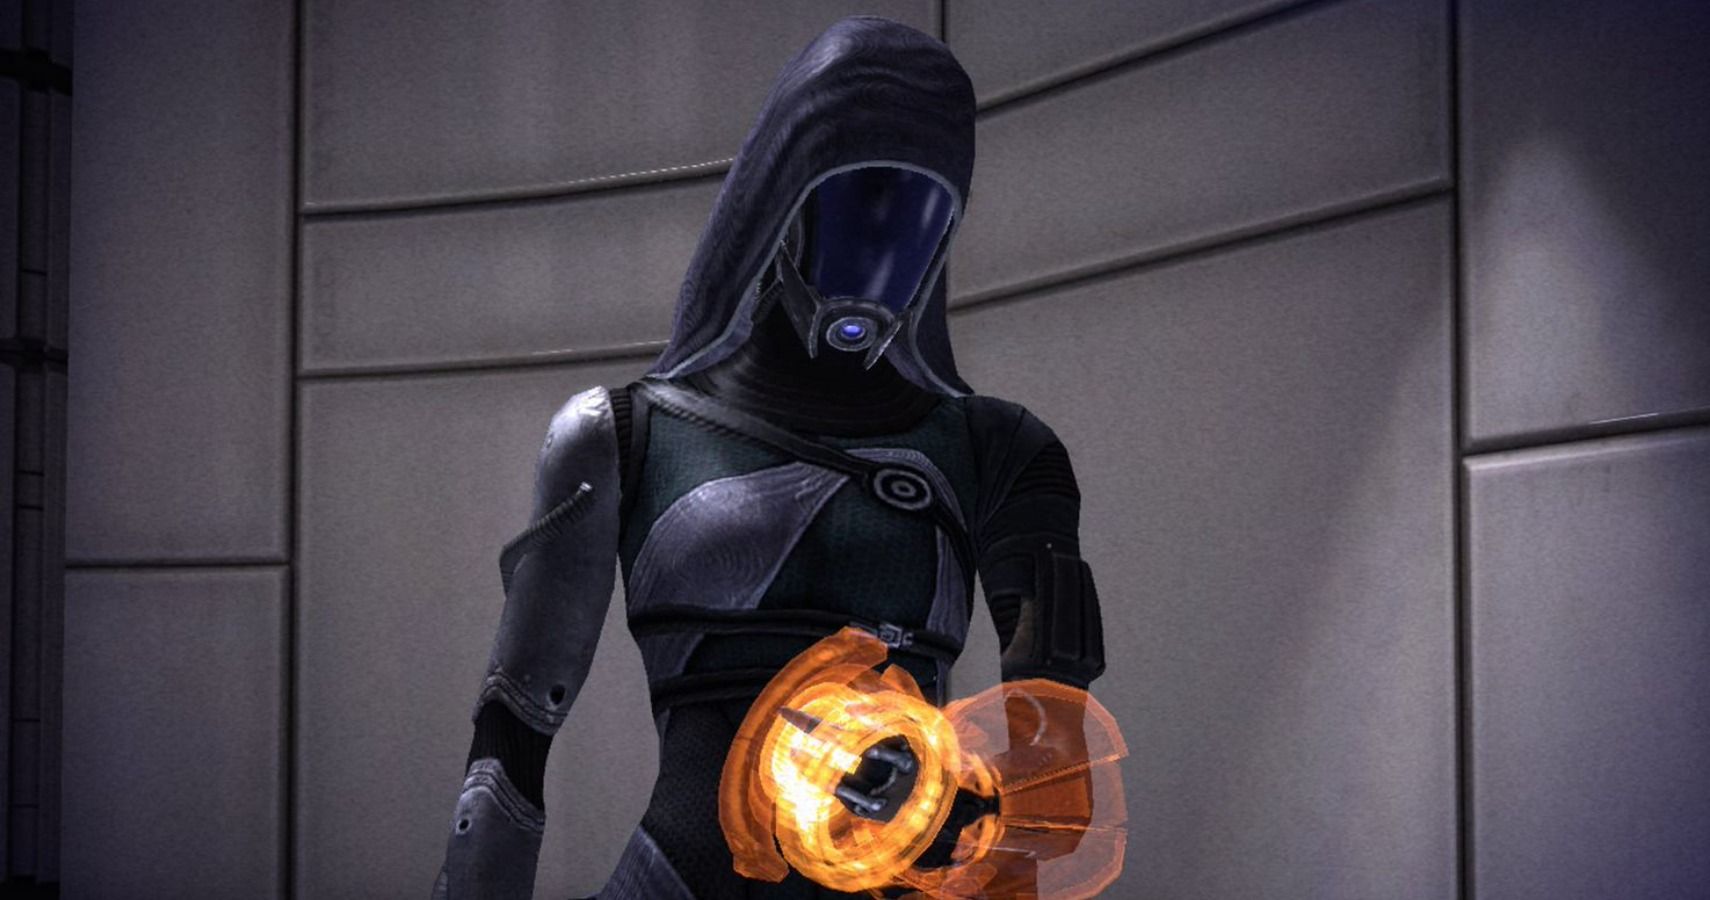 Tali'Zorah from Mass Effect